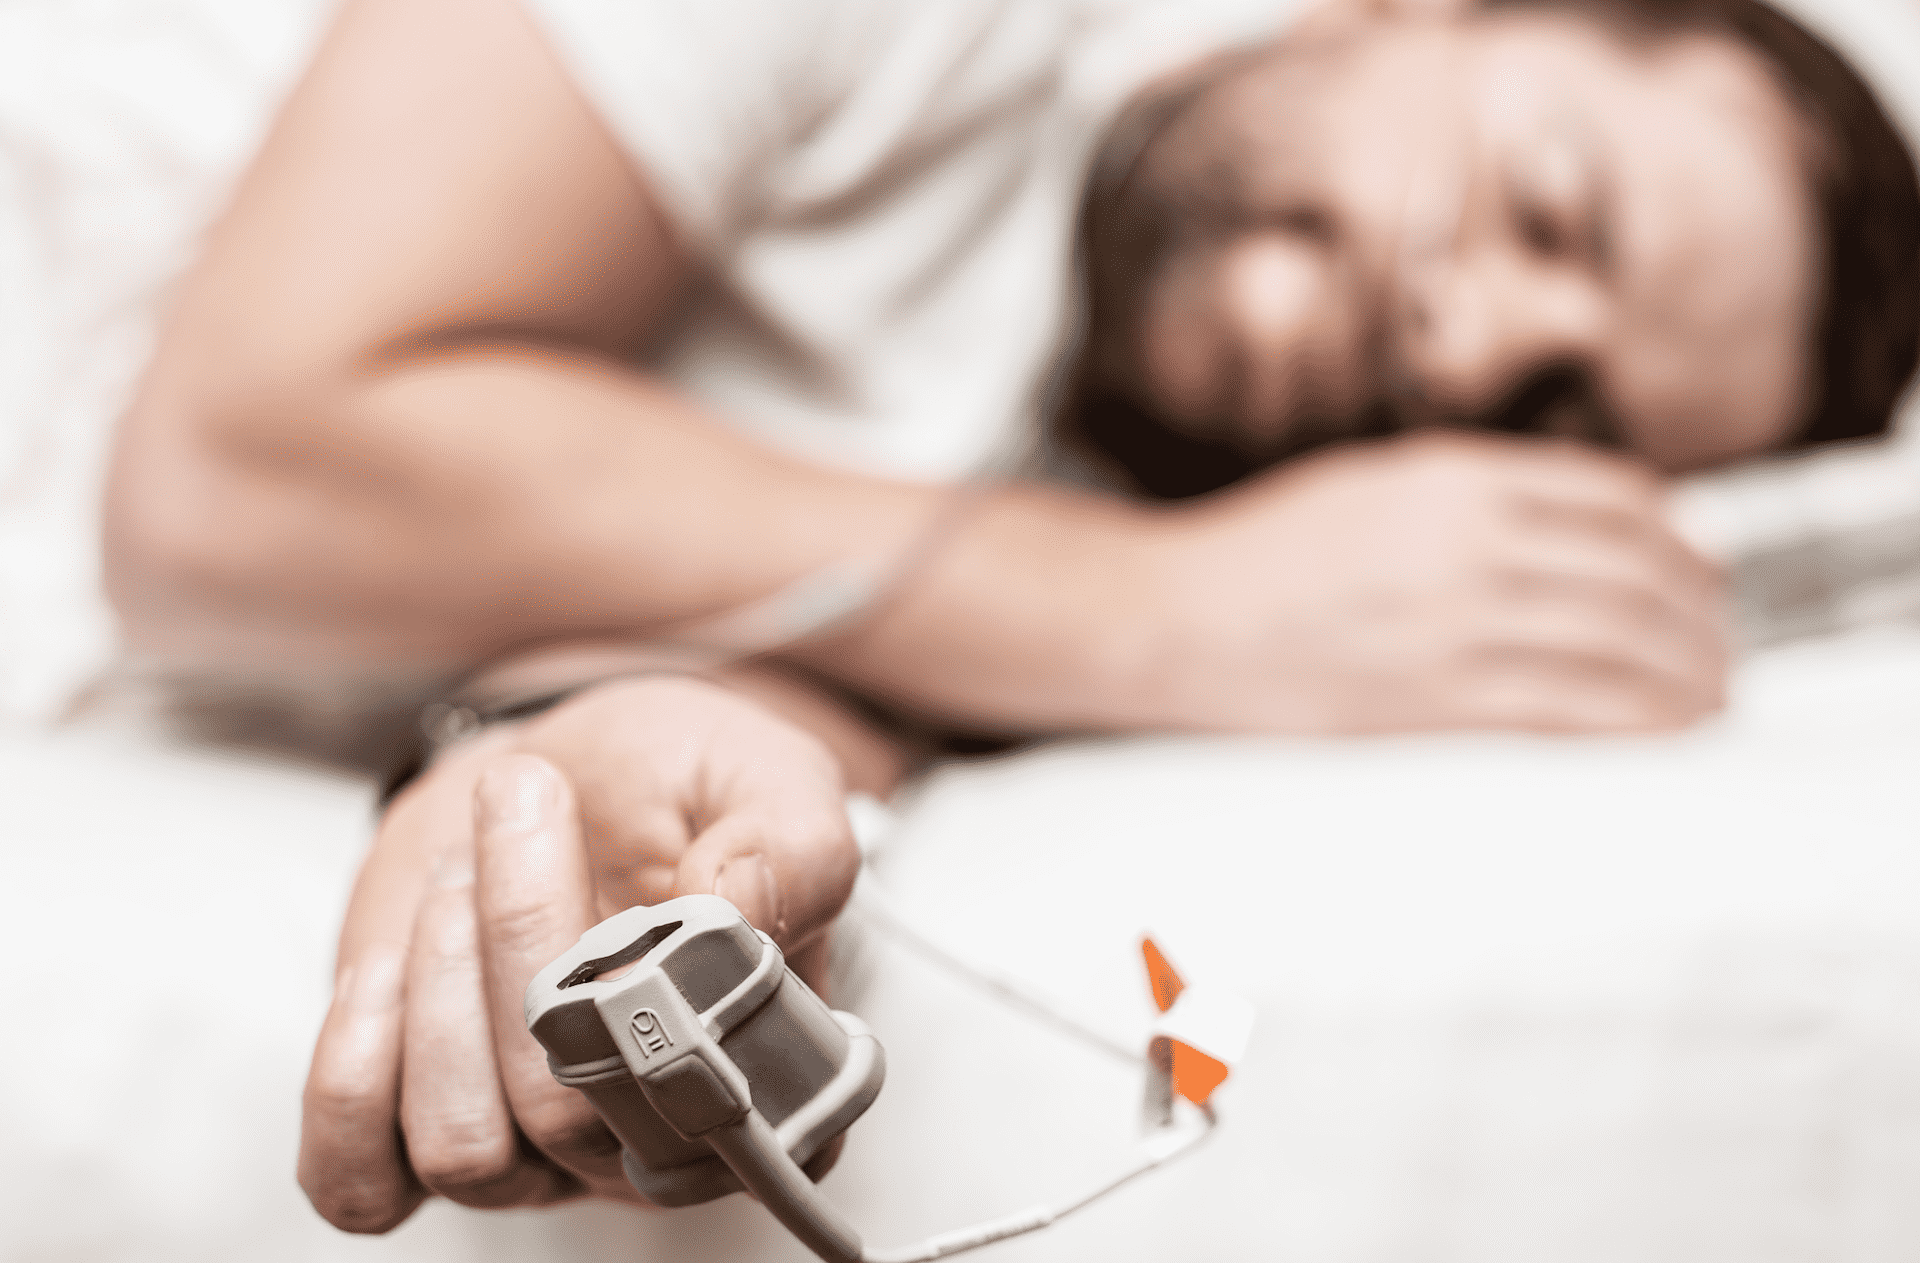 8 أعراض قد تعني أنك تعاني من توقف التنفس أثناء النوم  - انقطاع النفس النومي